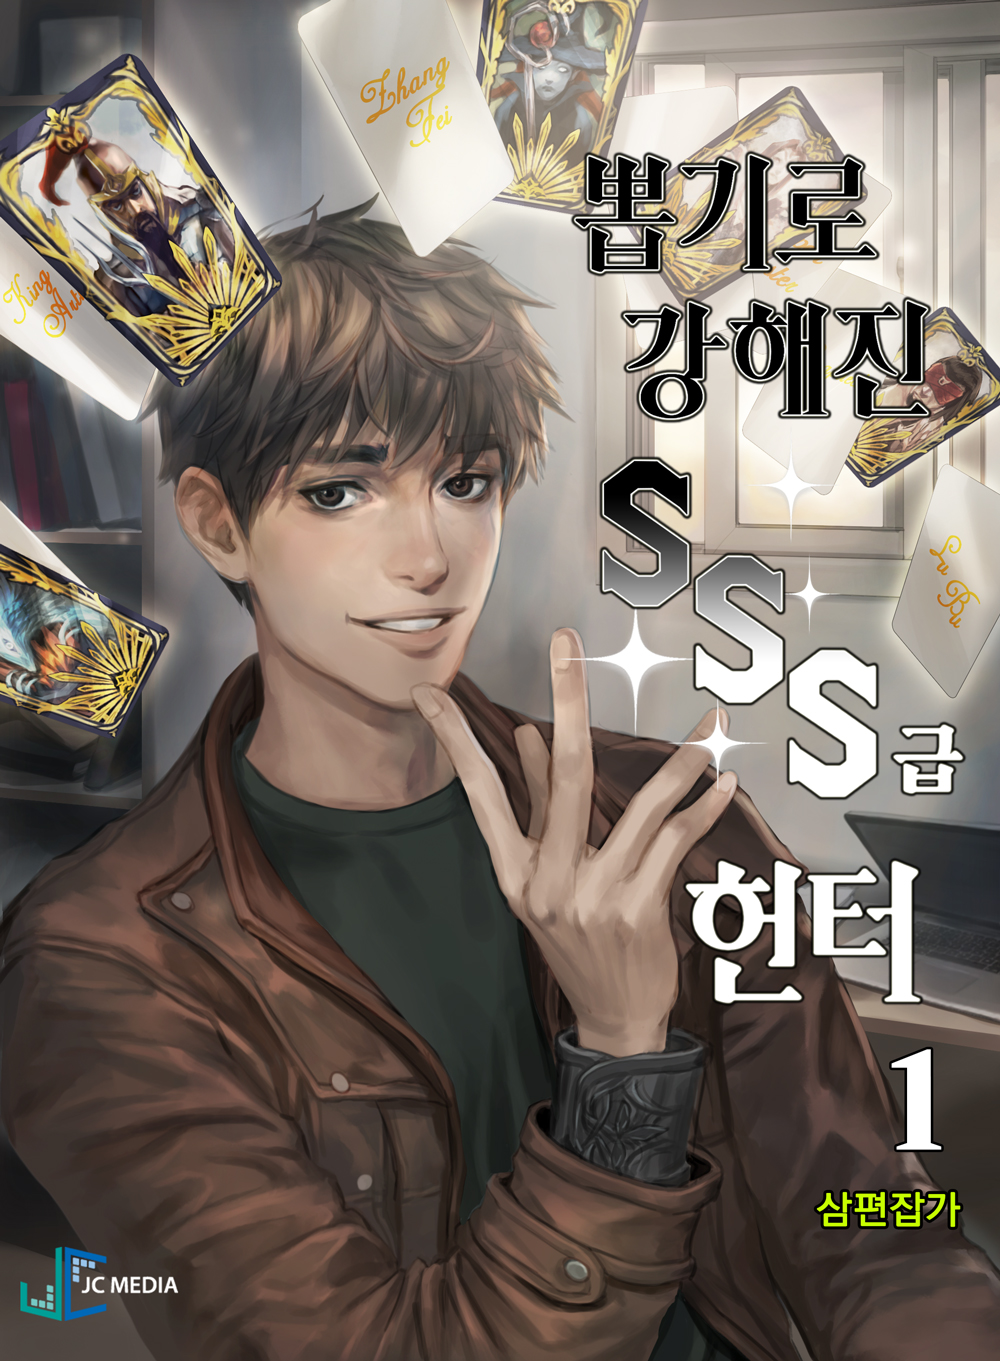 Read Sss-Class Gacha Hunter Manga on Mangakakalot